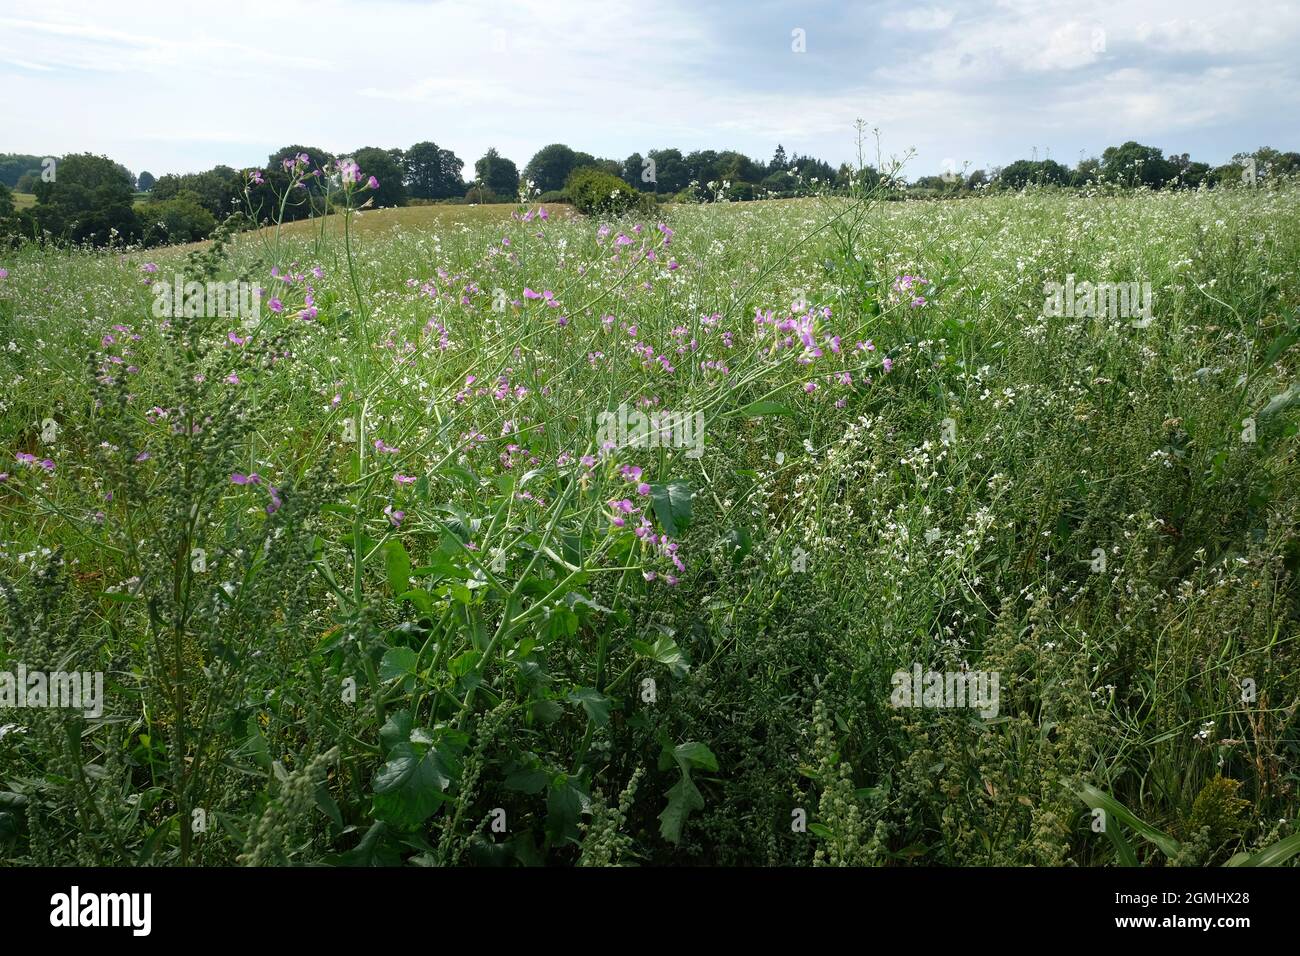 Prado de flores silvestres en la granja en Herefordshire, Inglaterra. Las semillas de flores silvestres se han sembrado en un campo junto a pastos de pastoreo Foto de stock